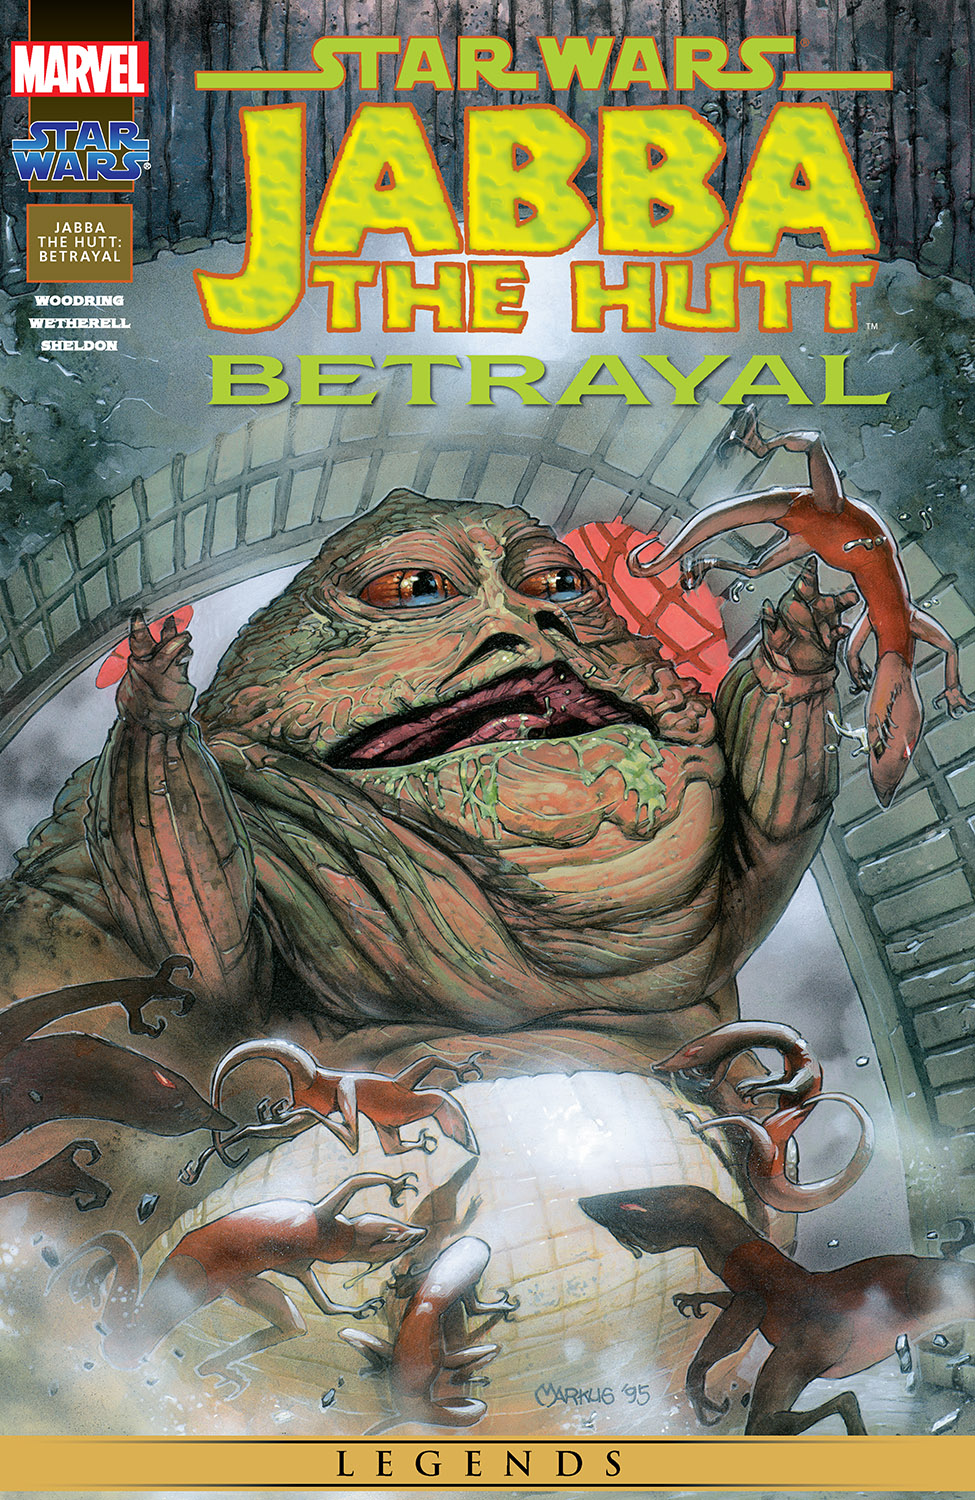 Jabba the hutt comic